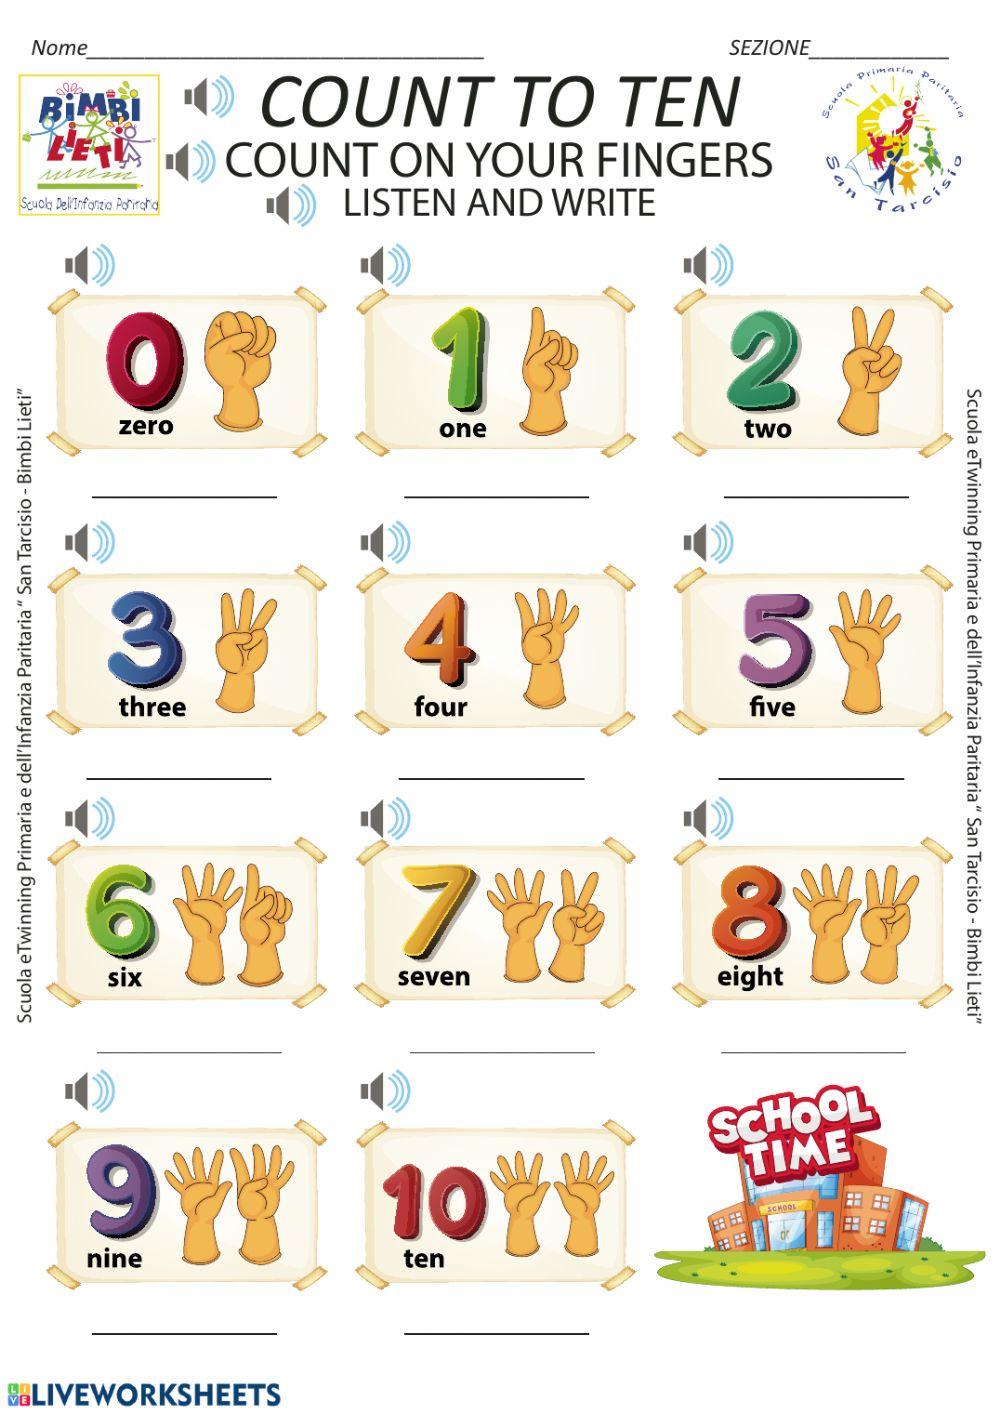 Count to ten - Scheda n. 2 kindergarten